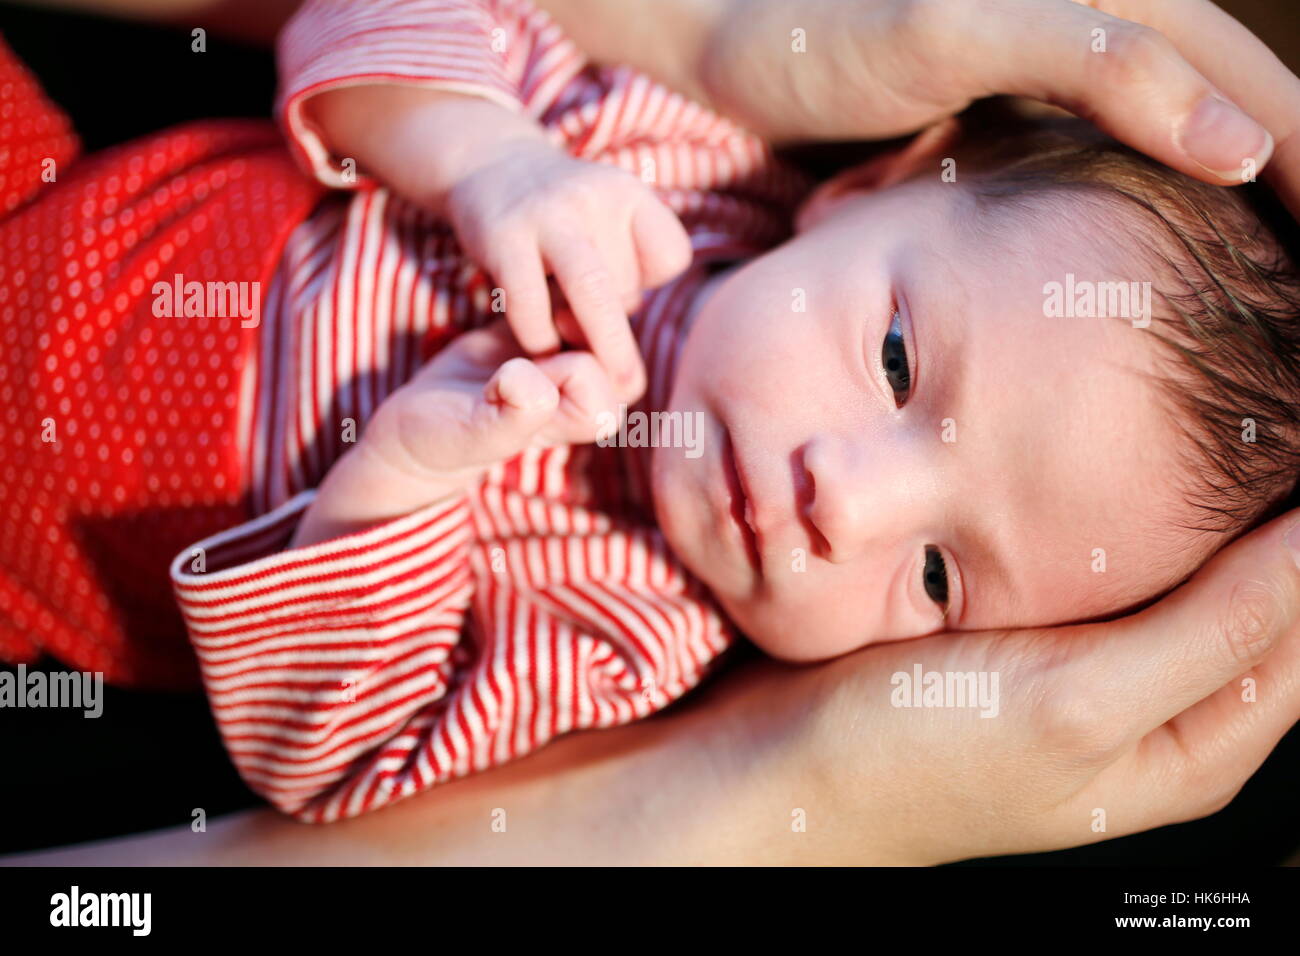 Zwei Wochen alten Baby mit Eltern Stockfoto